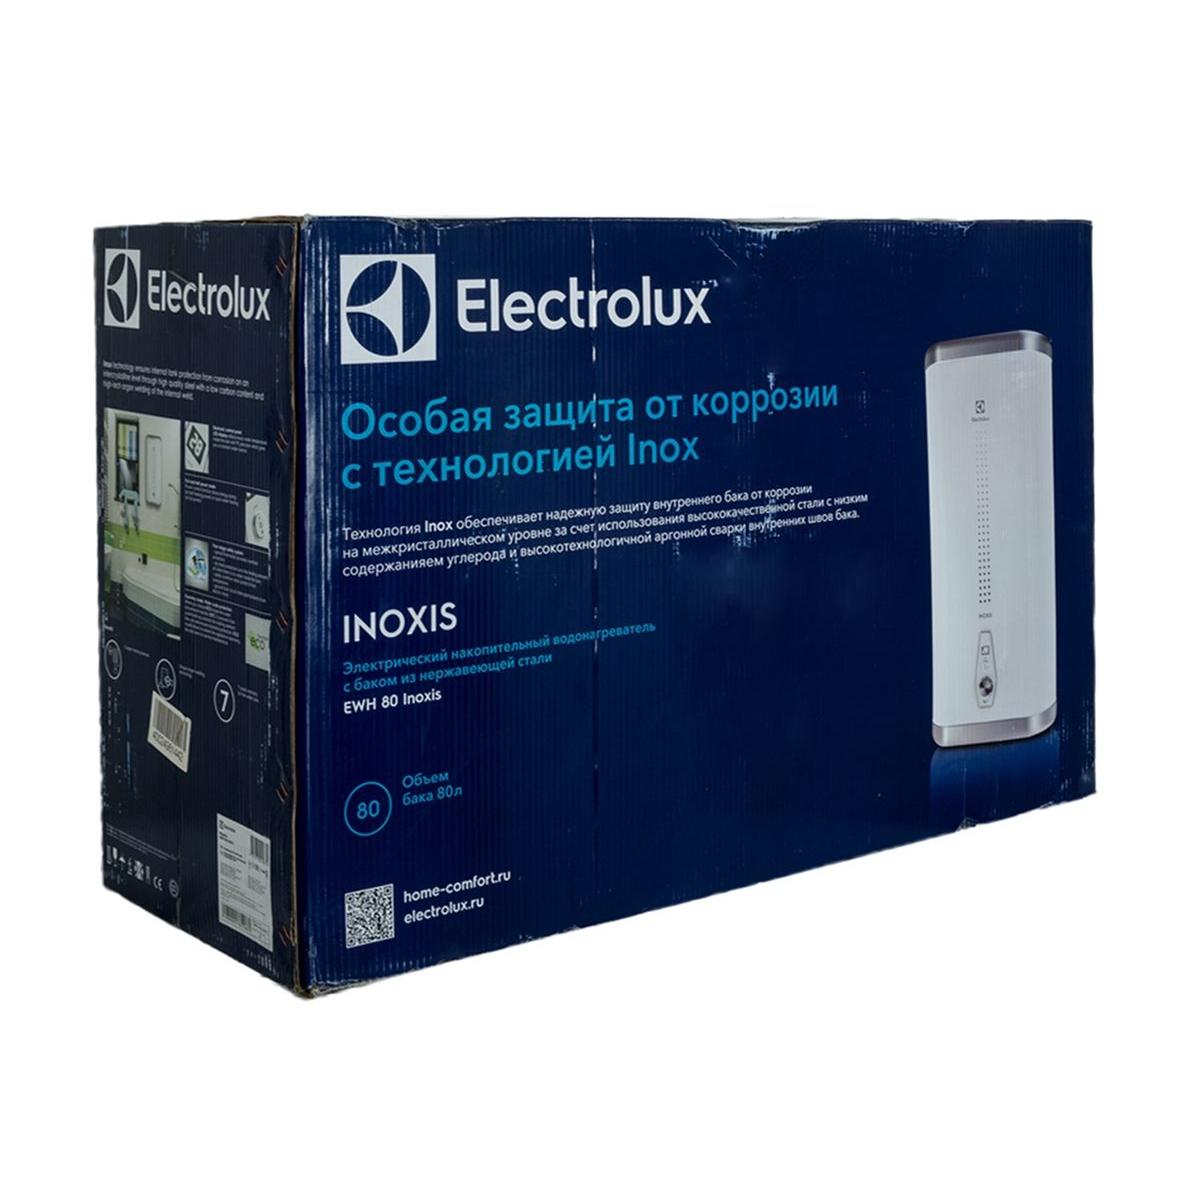 Electrolux EWH 80 Inoxis